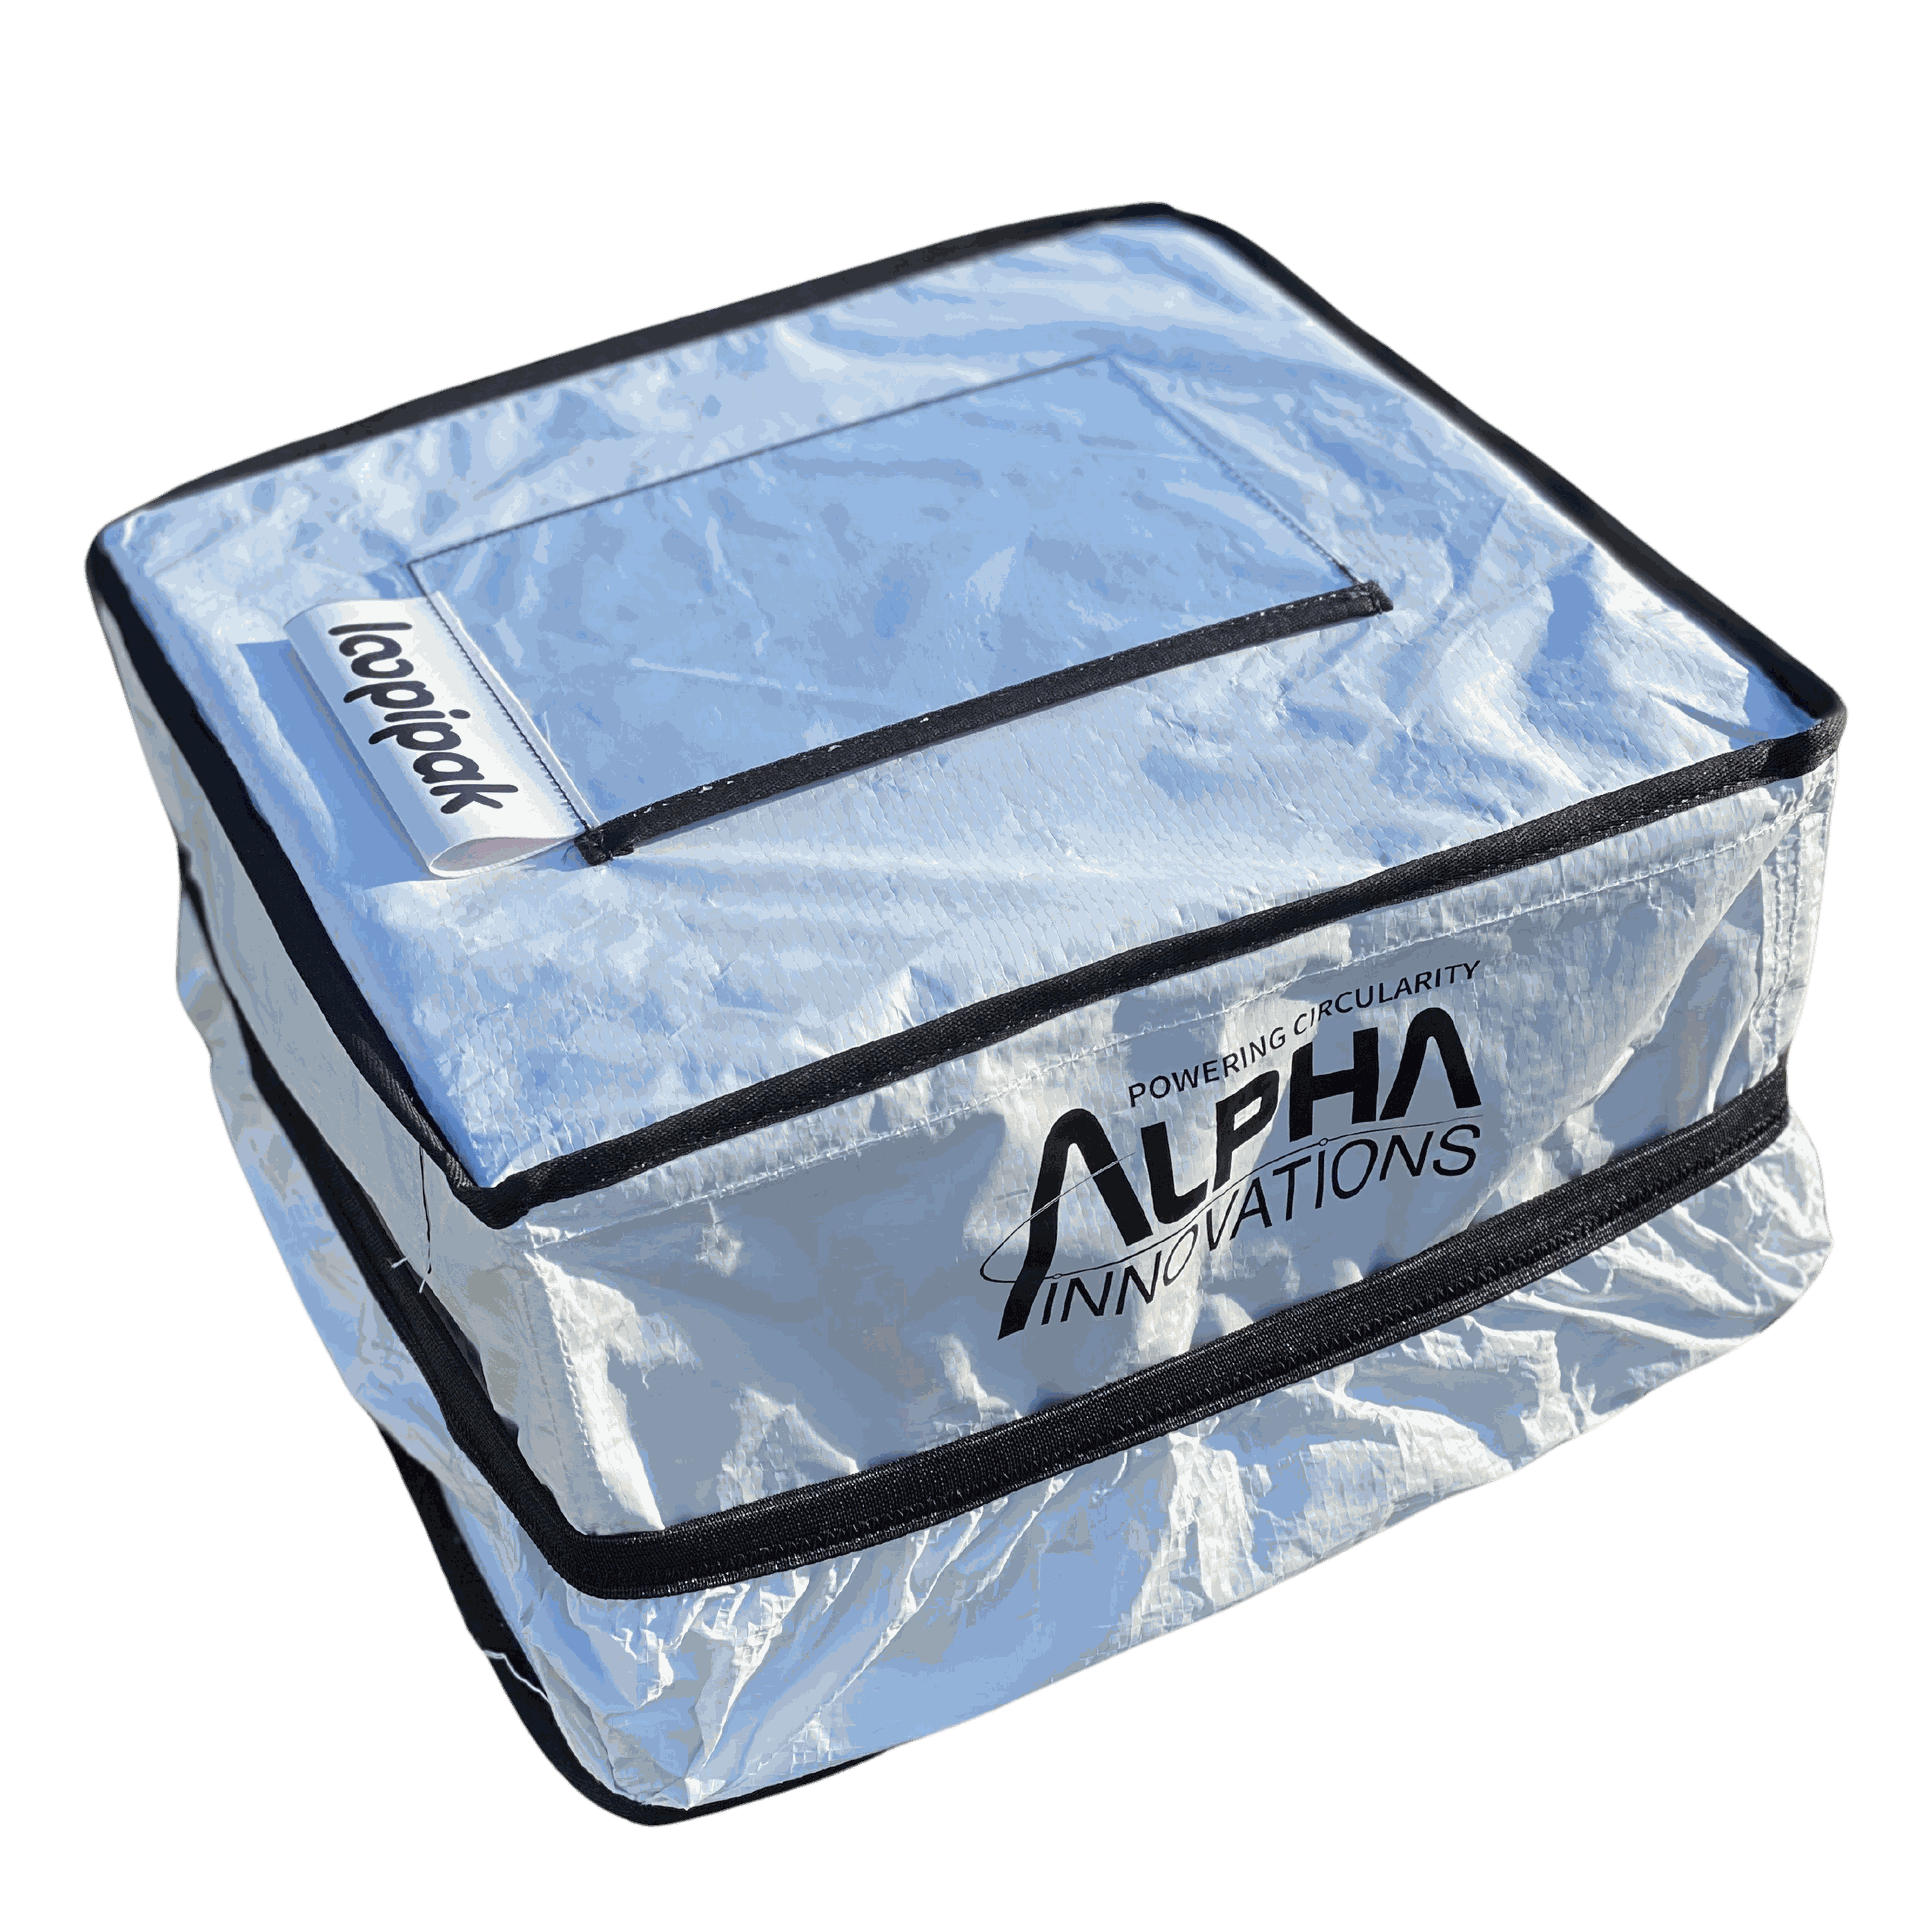 La caisse réutilisable de dimensions 30x30x15cm de Loopipak : une solution compacte et durable pour vos besoins d'emballage. Pratique, écologique et prête à être utilisée pour expédier vos produits en toute sécurité. #Loopipak #EmballageRéutilisable #ExpéditionDurable